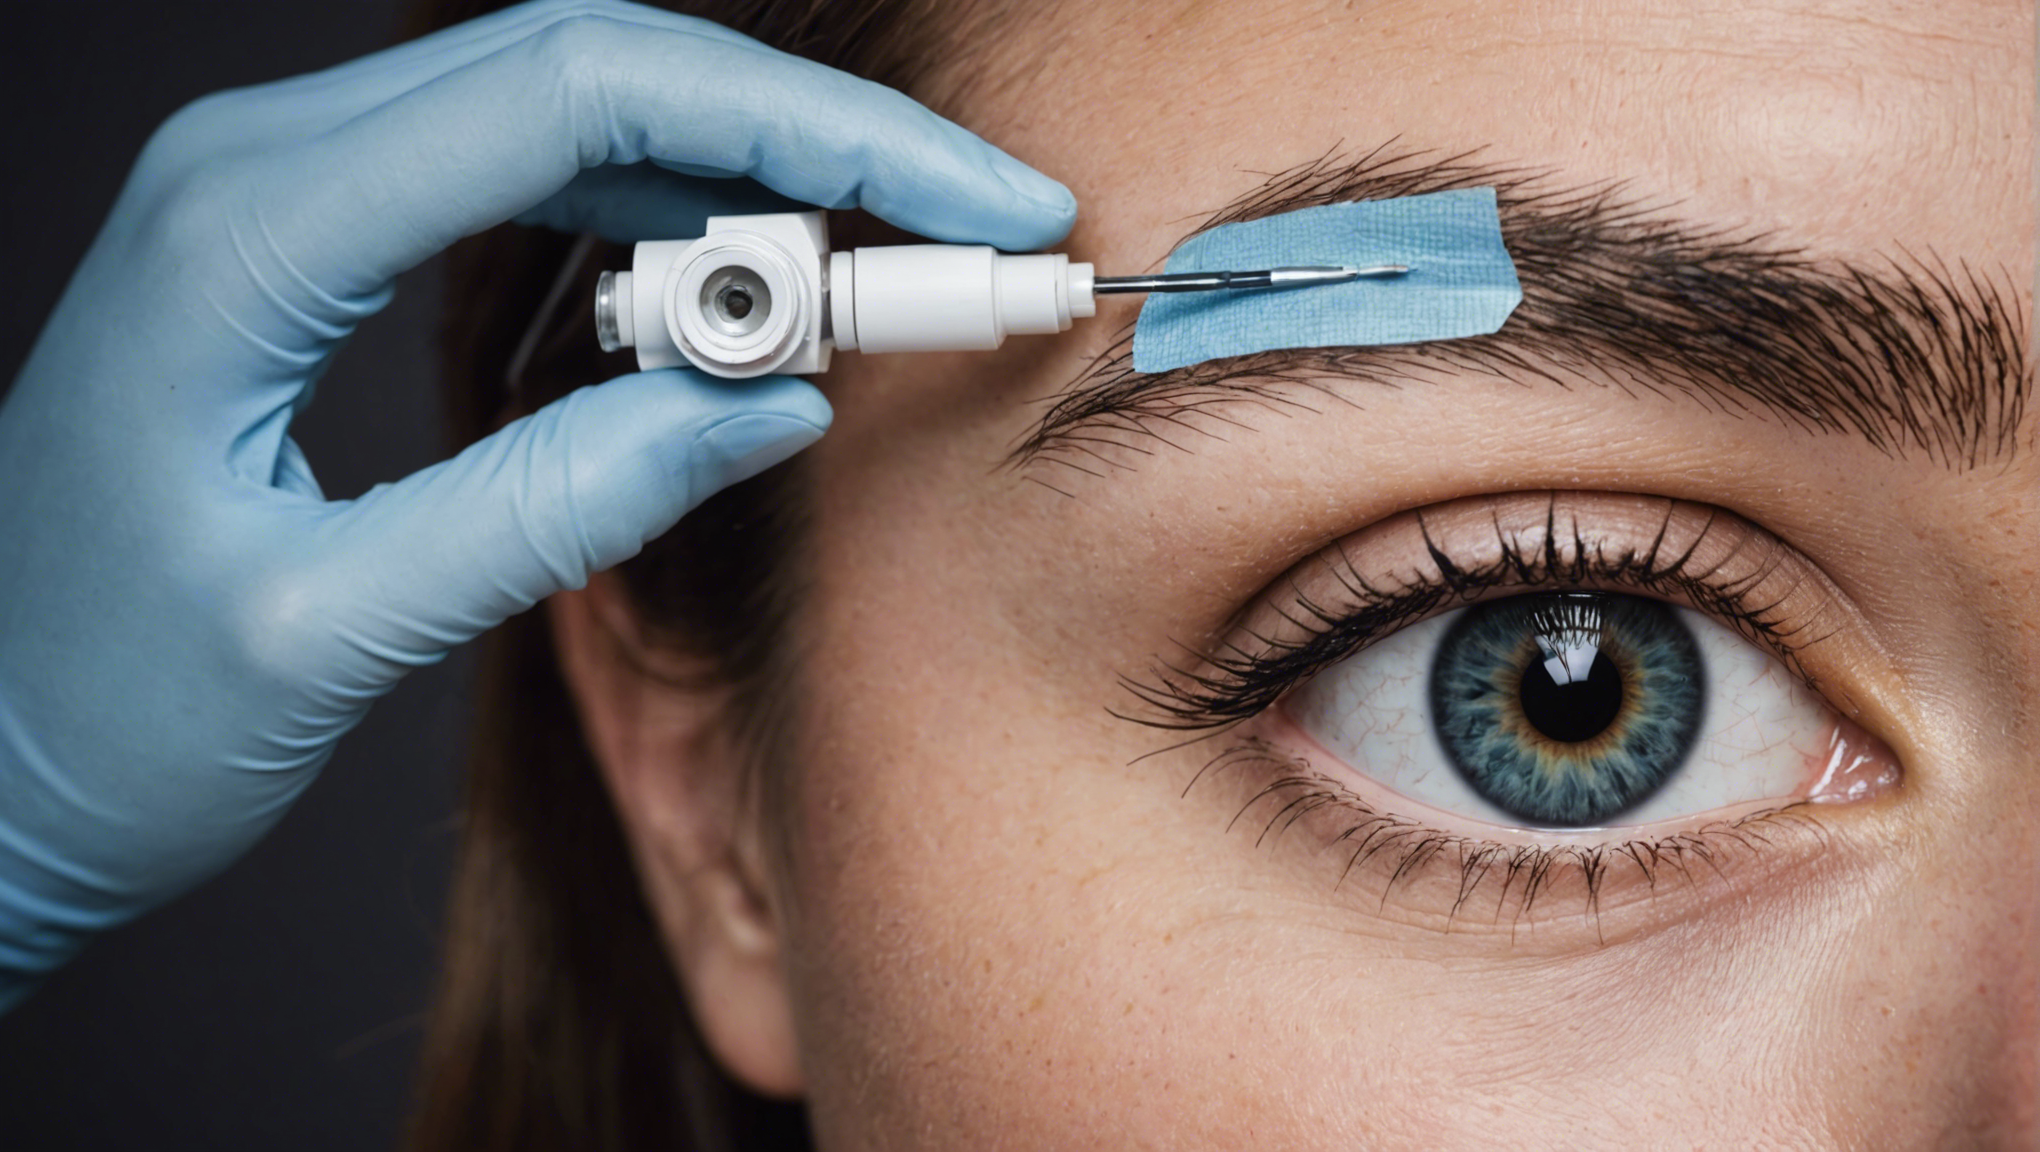 découvrez tout ce qu'il faut savoir sur la préparation à la chirurgie des yeux : conseils, étapes et informations indispensables pour aborder sereinement cette intervention.